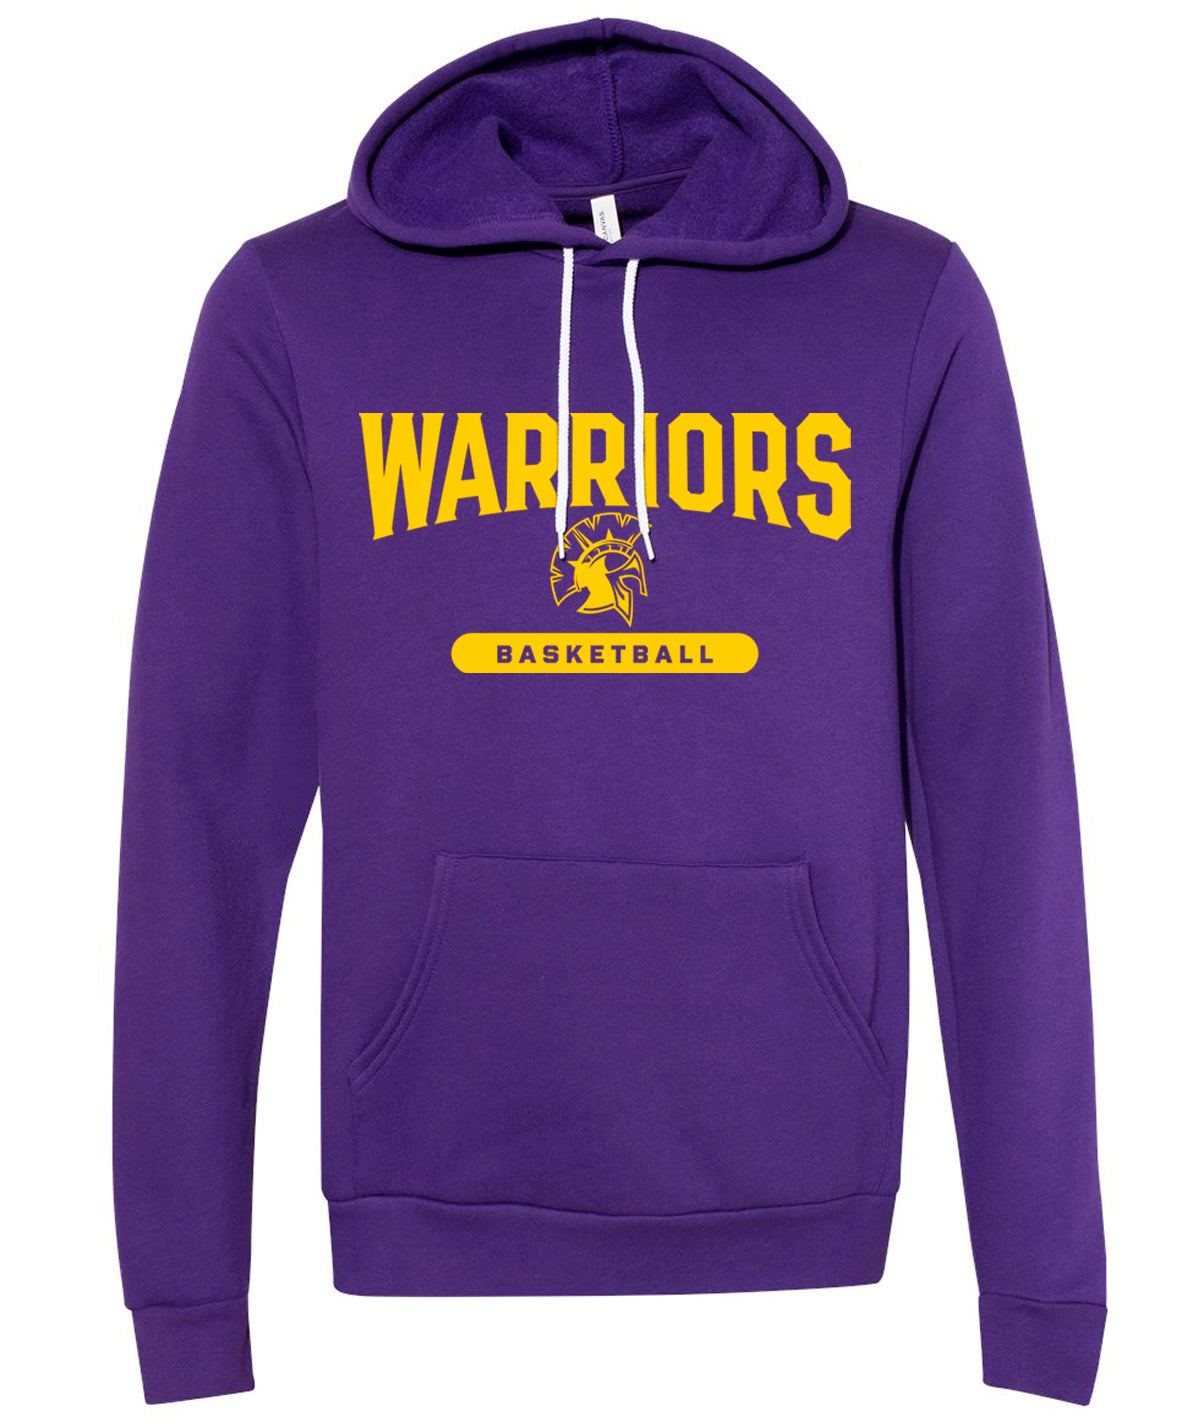 Warriors Basketball Softstyle Hooded Sweatshirt